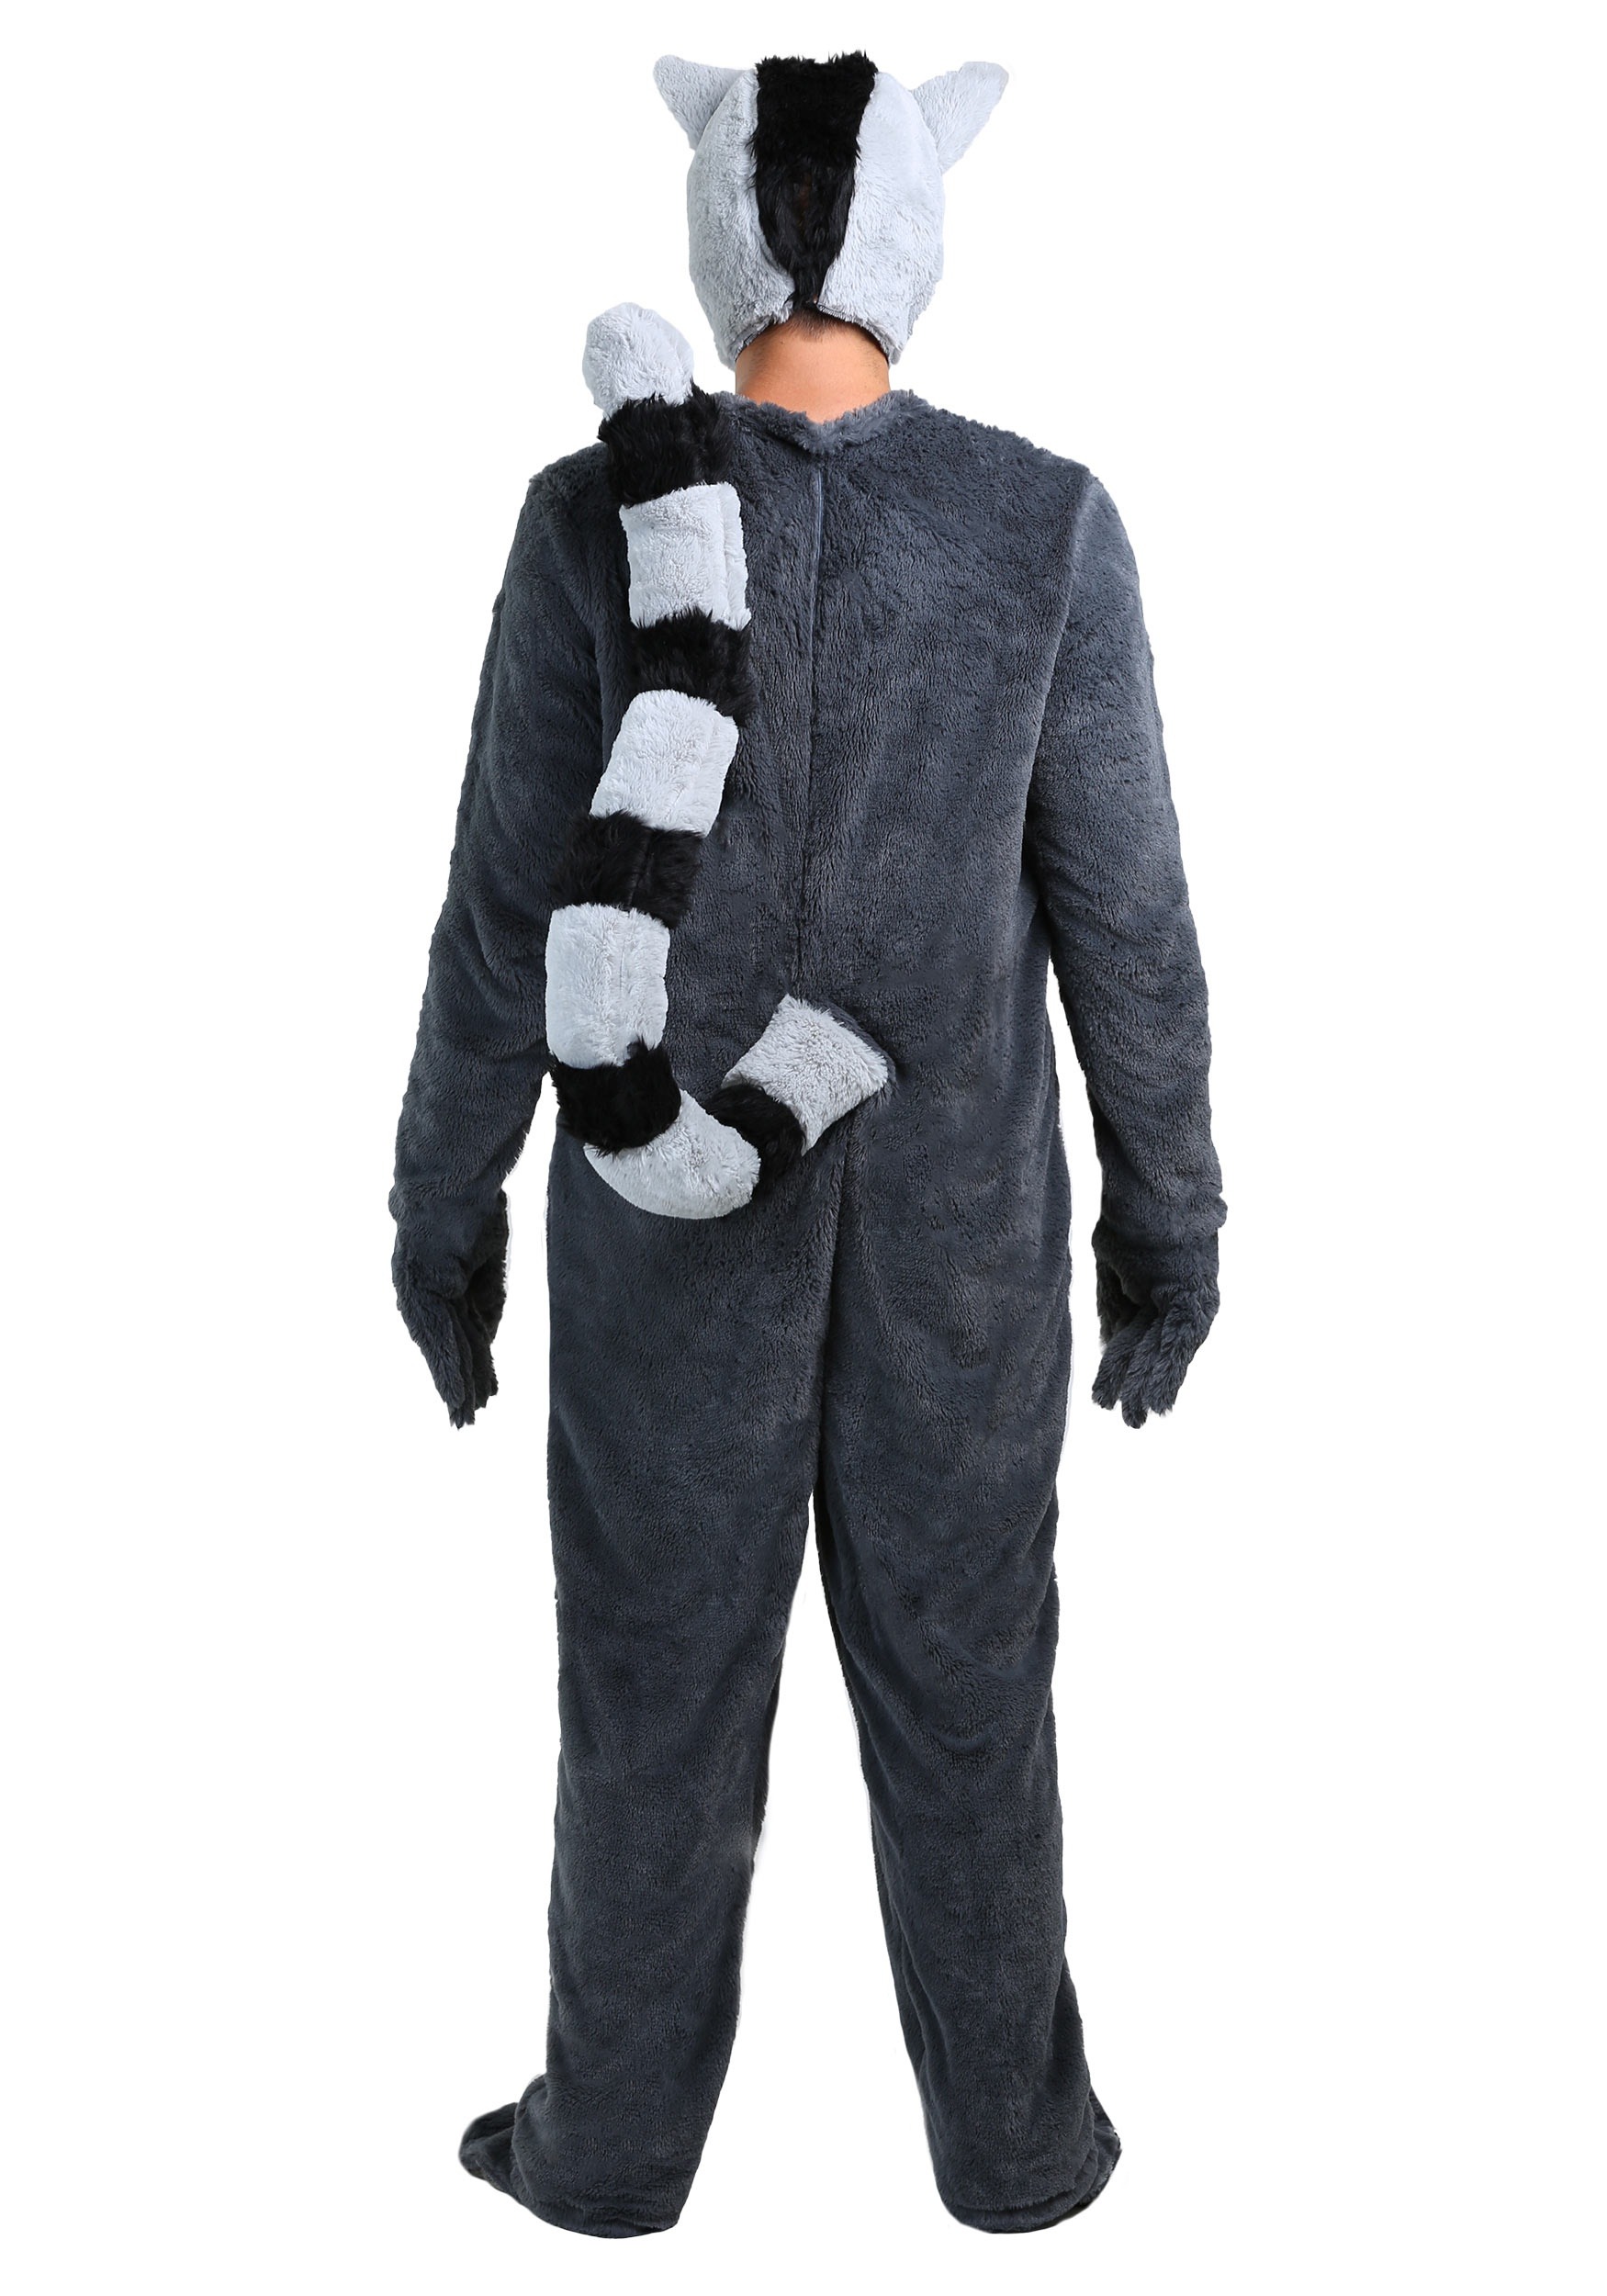 Lemur Adult Costume